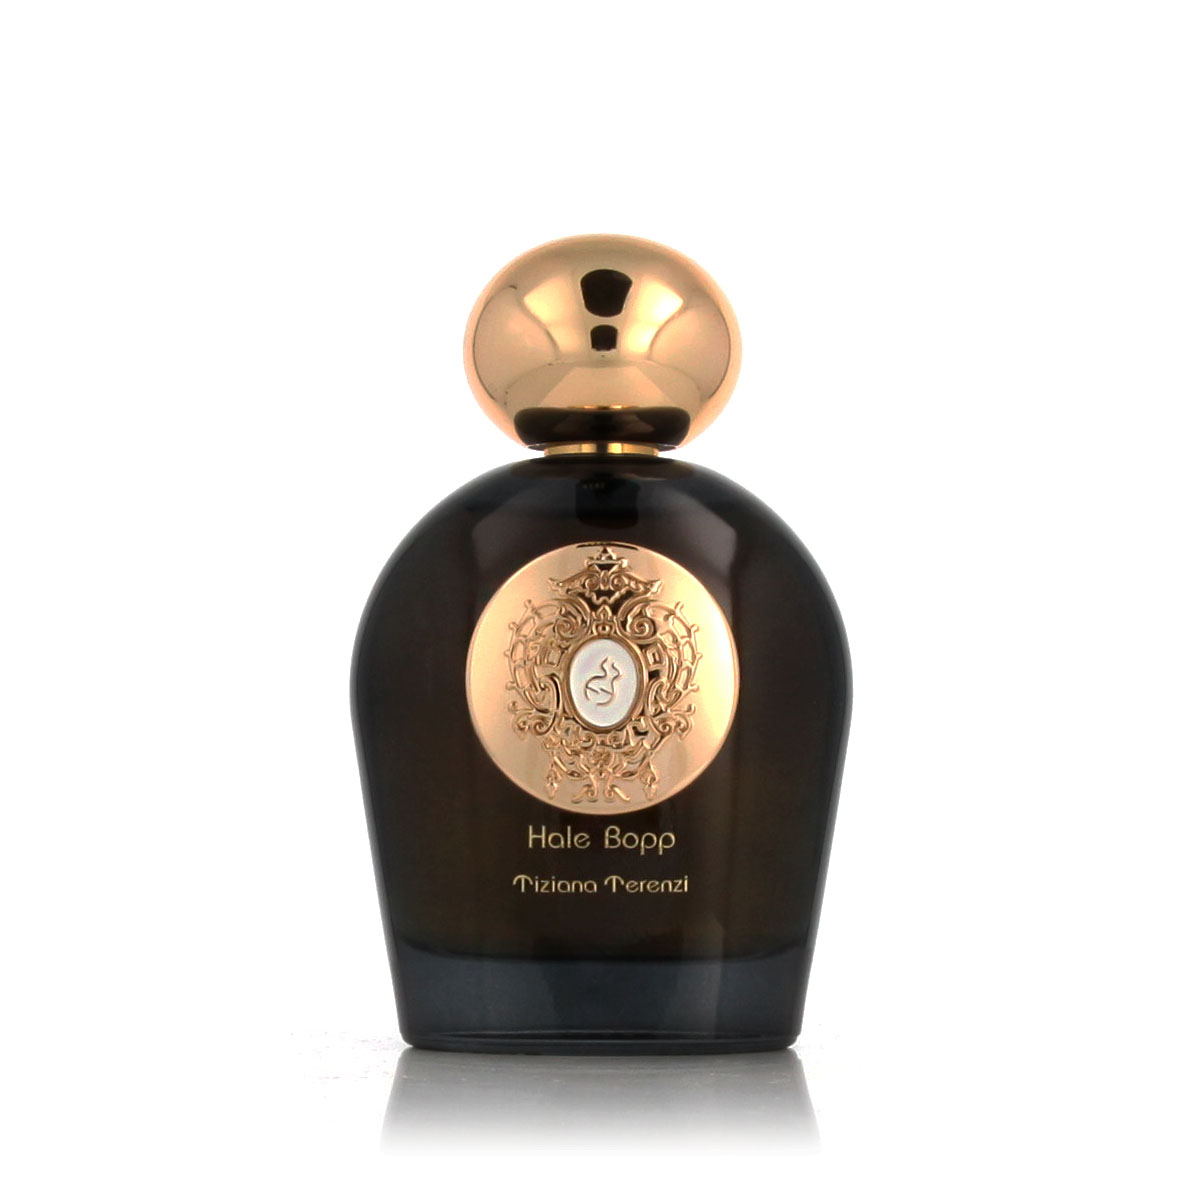 Tiziana Terenzi Hale Bopp 10 ml NIŠINIAI kvepalų mėginukas (atomaizeris) Unisex Parfum